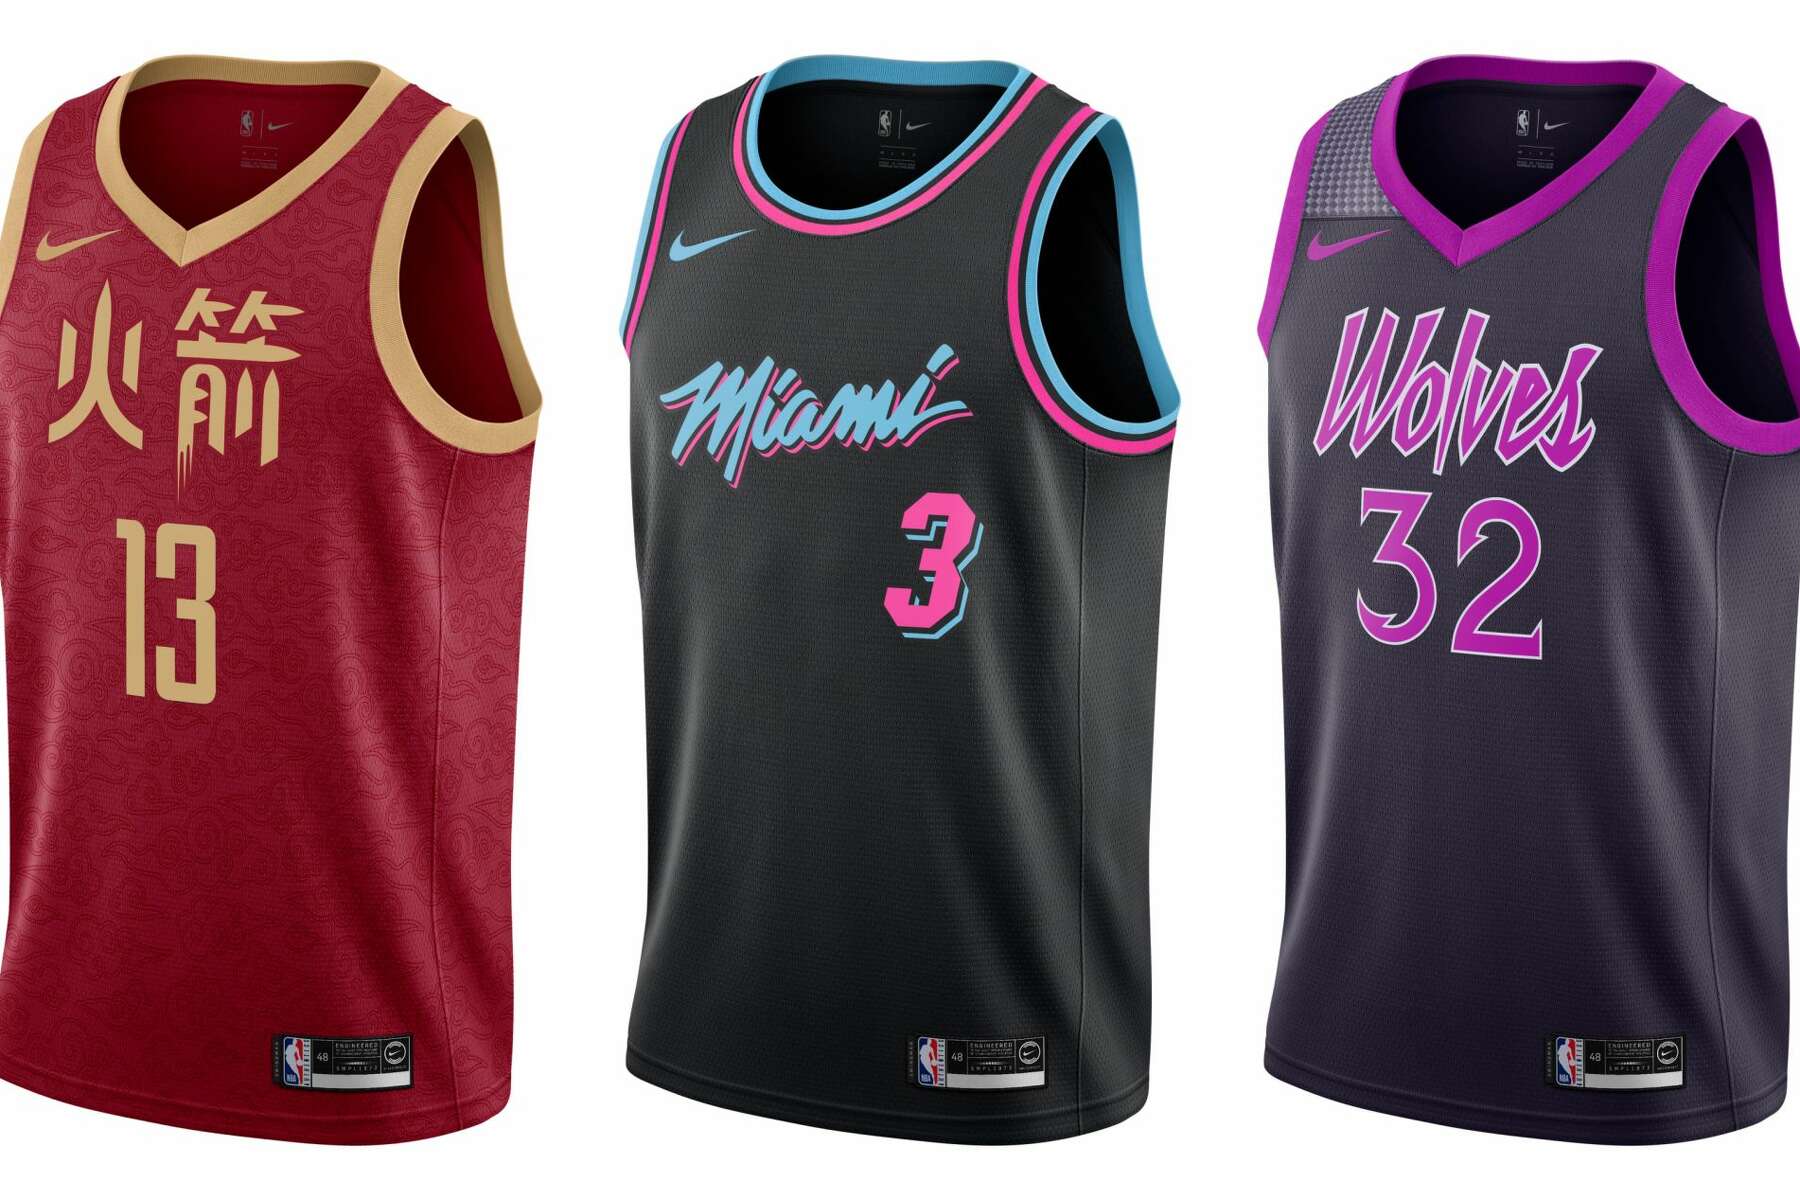 Levántate Gobernador Realista A look at every team's NBA 'City' uniforms this season